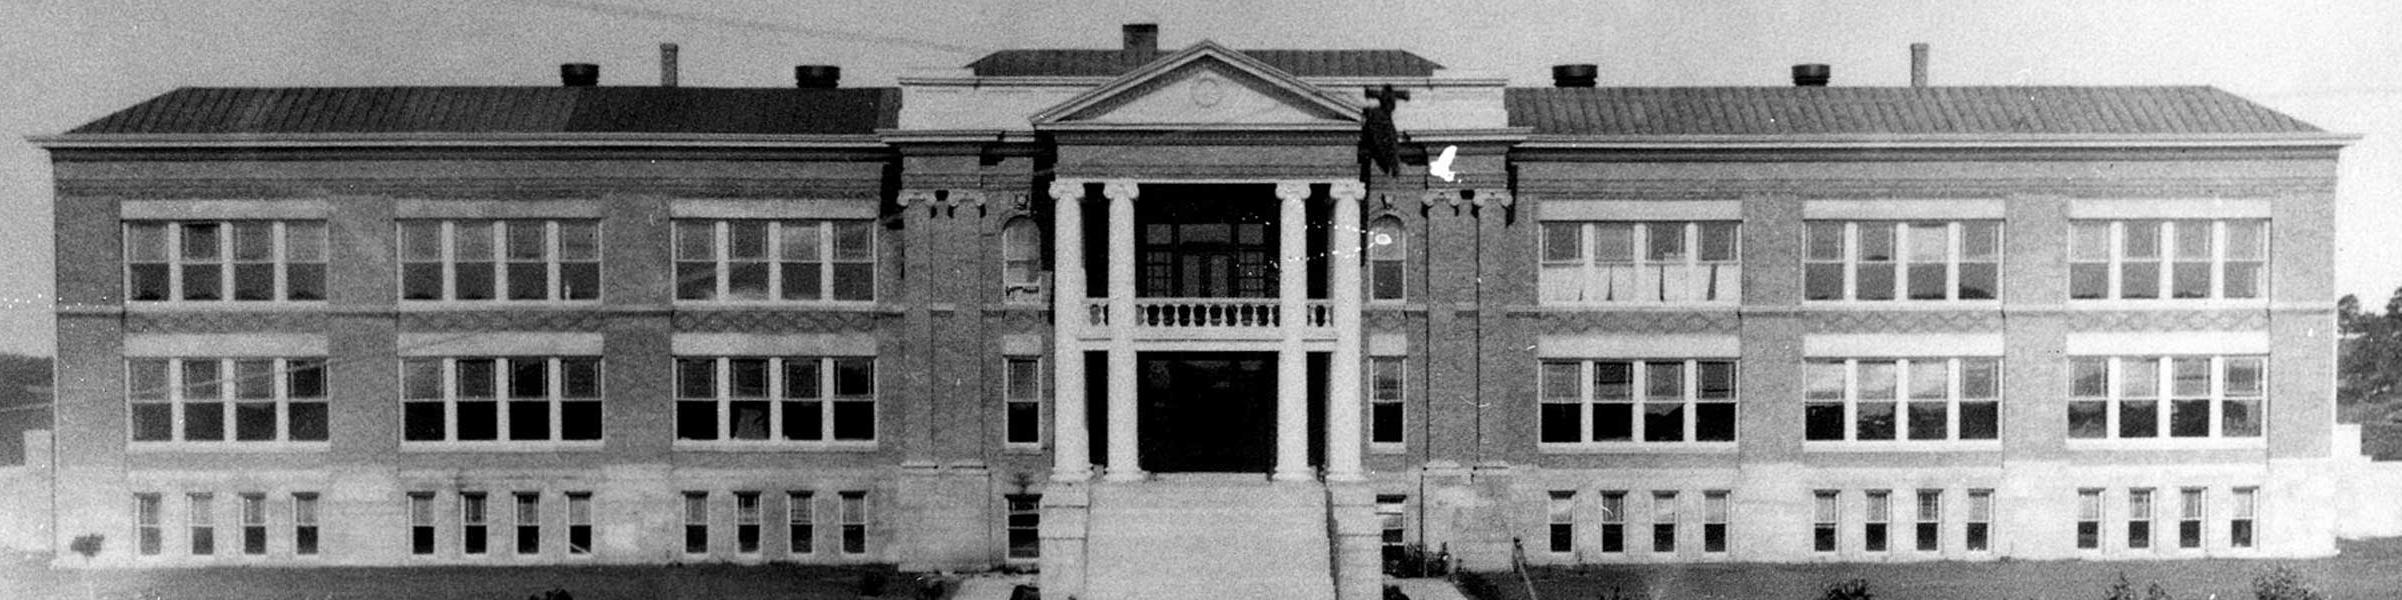 1911年科学馆照片